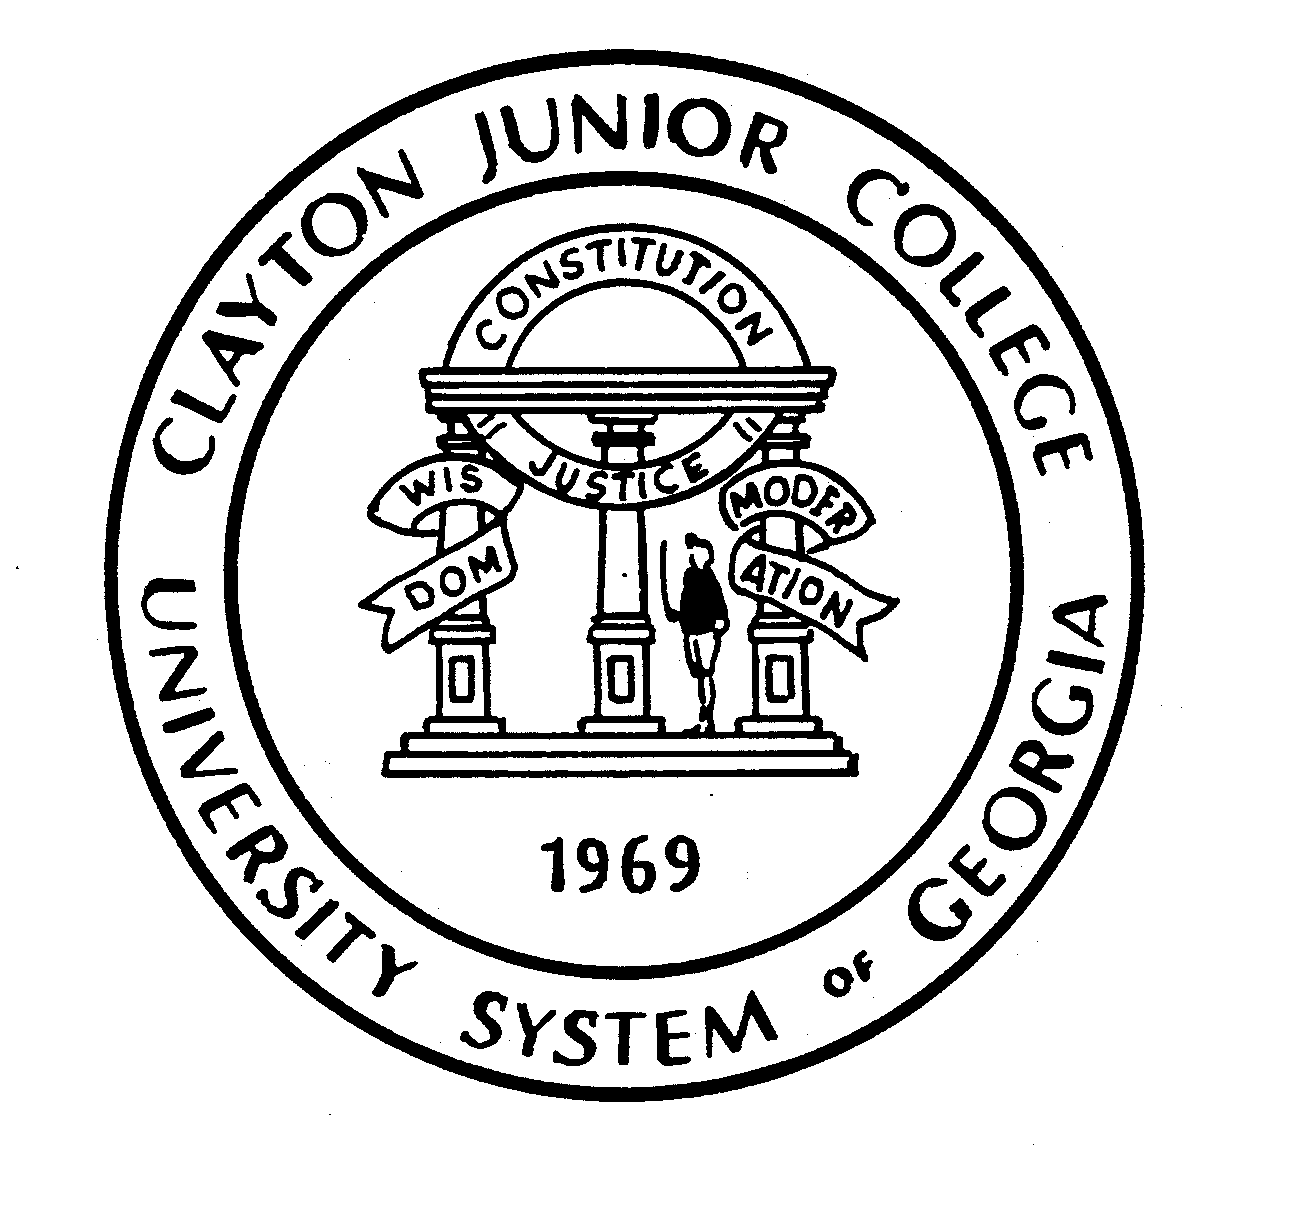  CLAYTON JUNIOR COLLEGE UNIVERSITY SYSTEM OF GEORGIA 1969